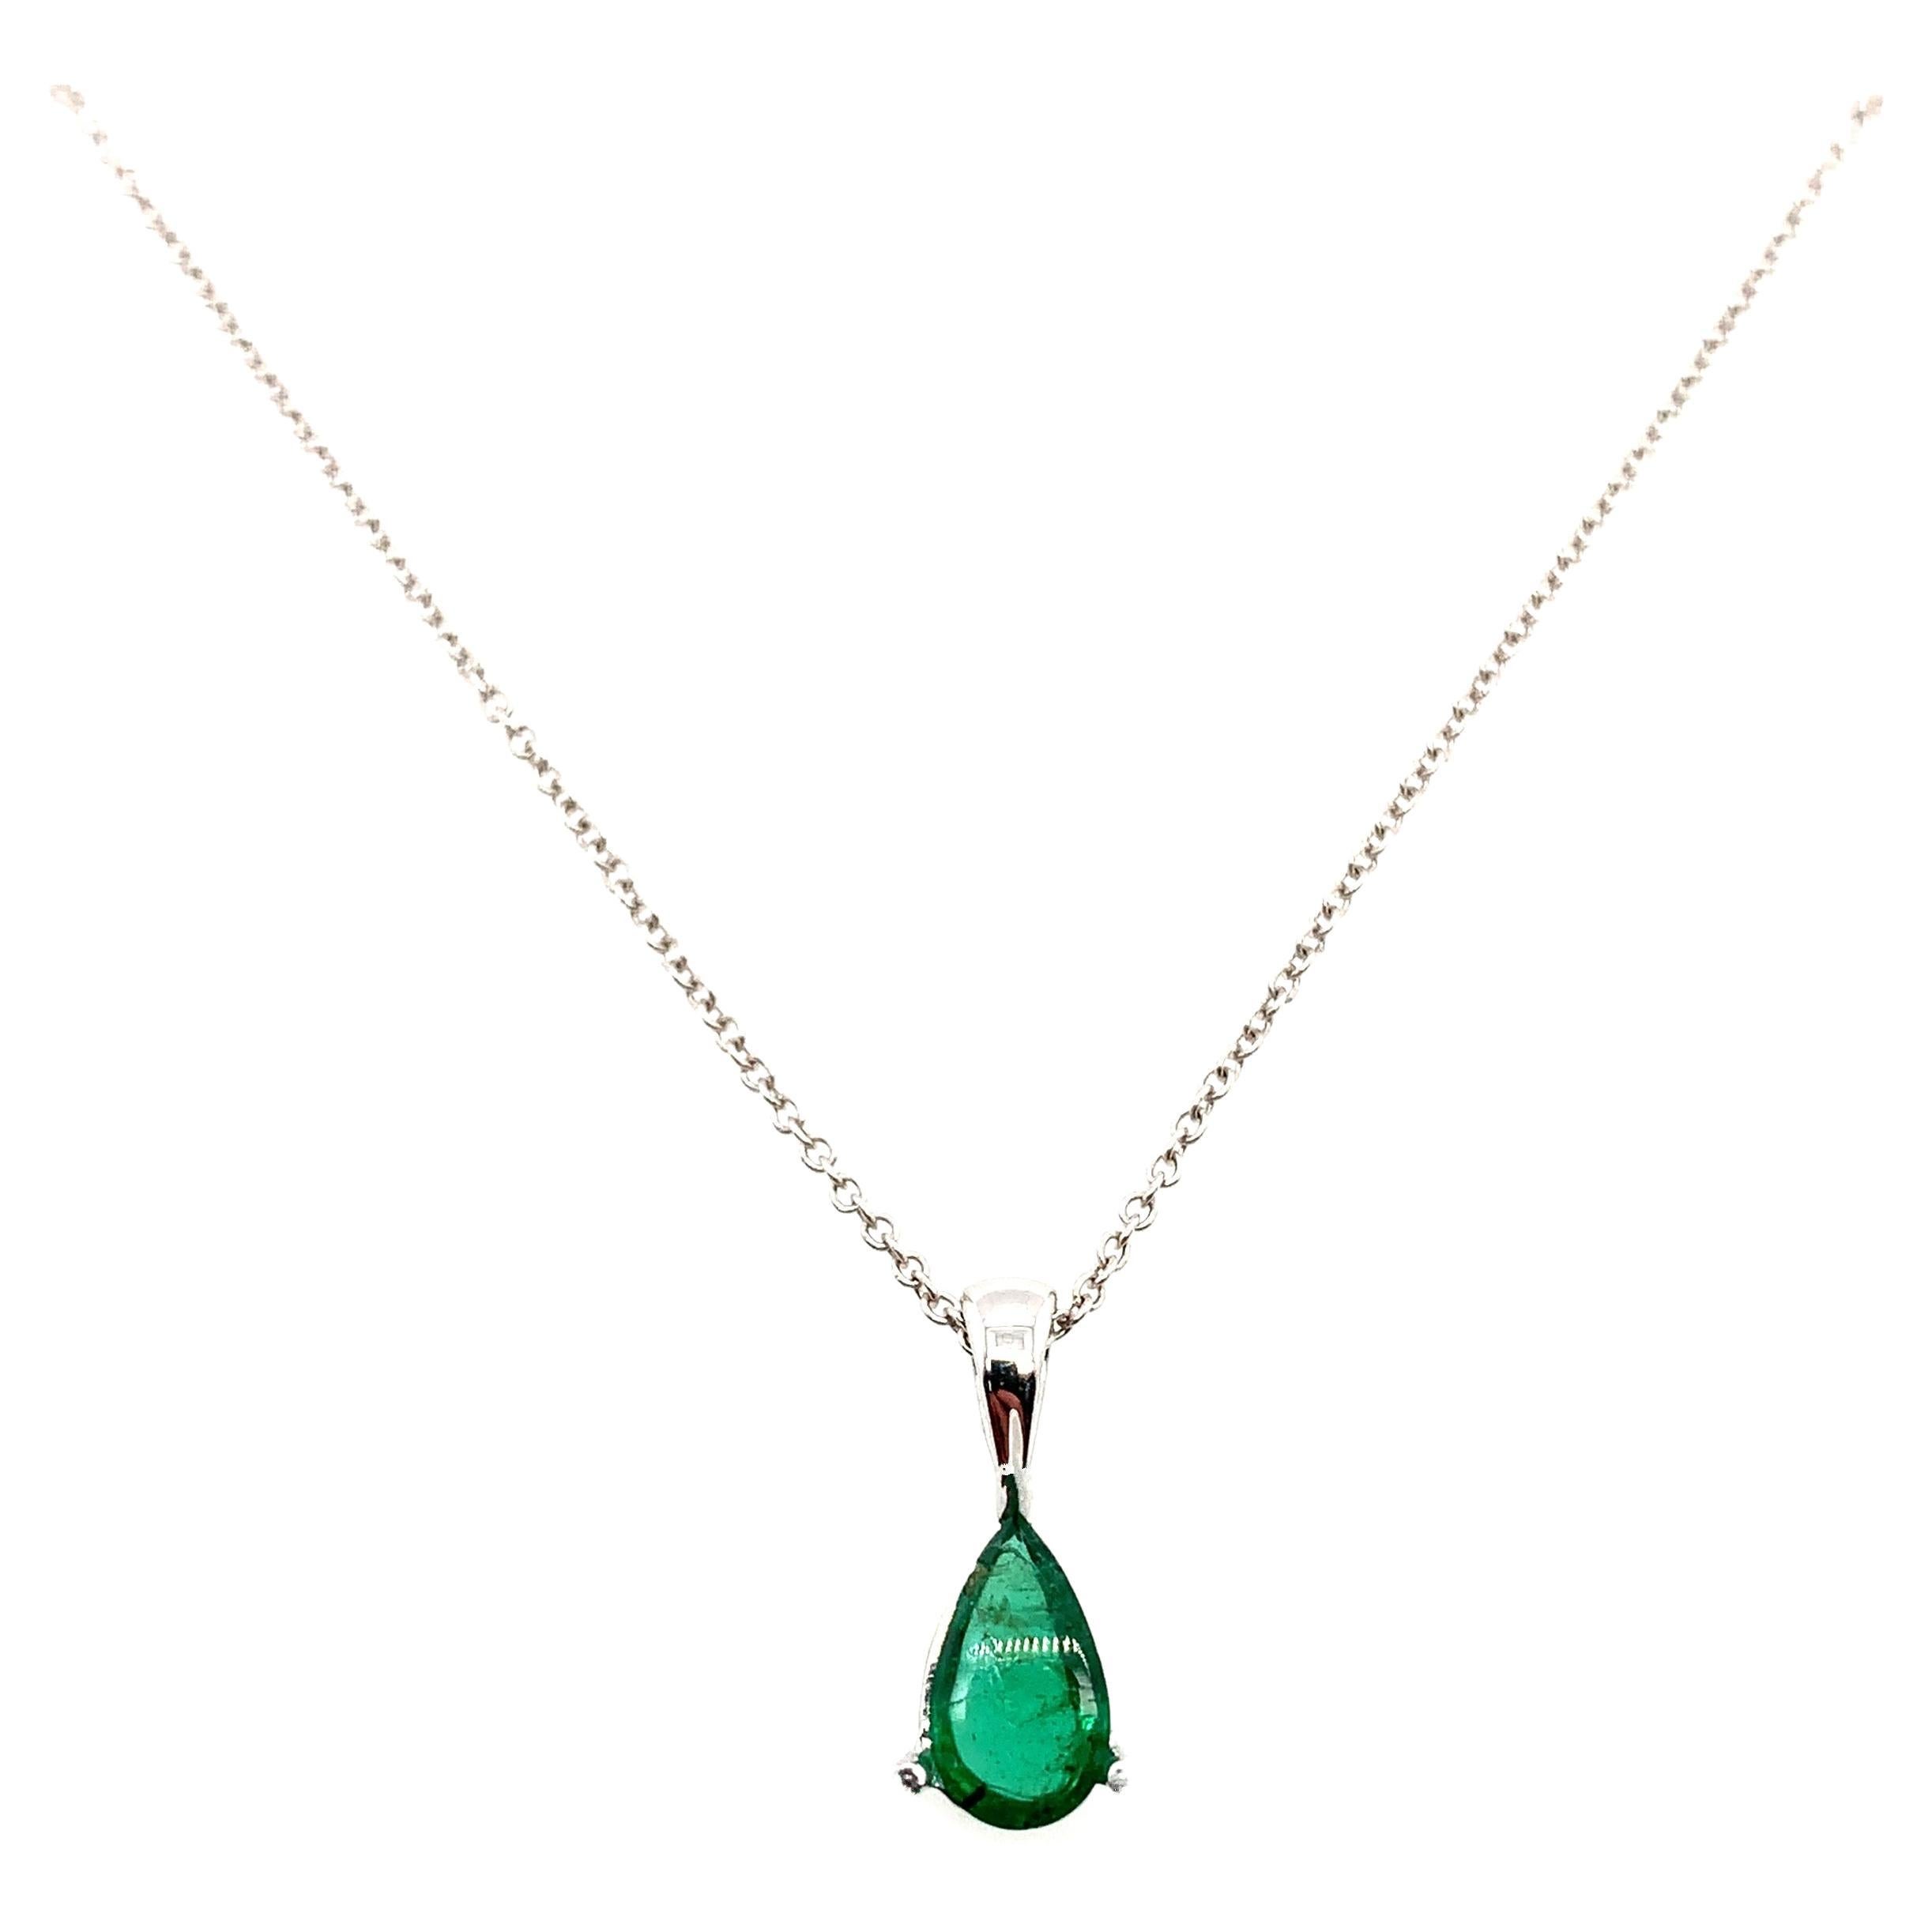 Green emerald soliatire drop pendant necklace 18k white gold